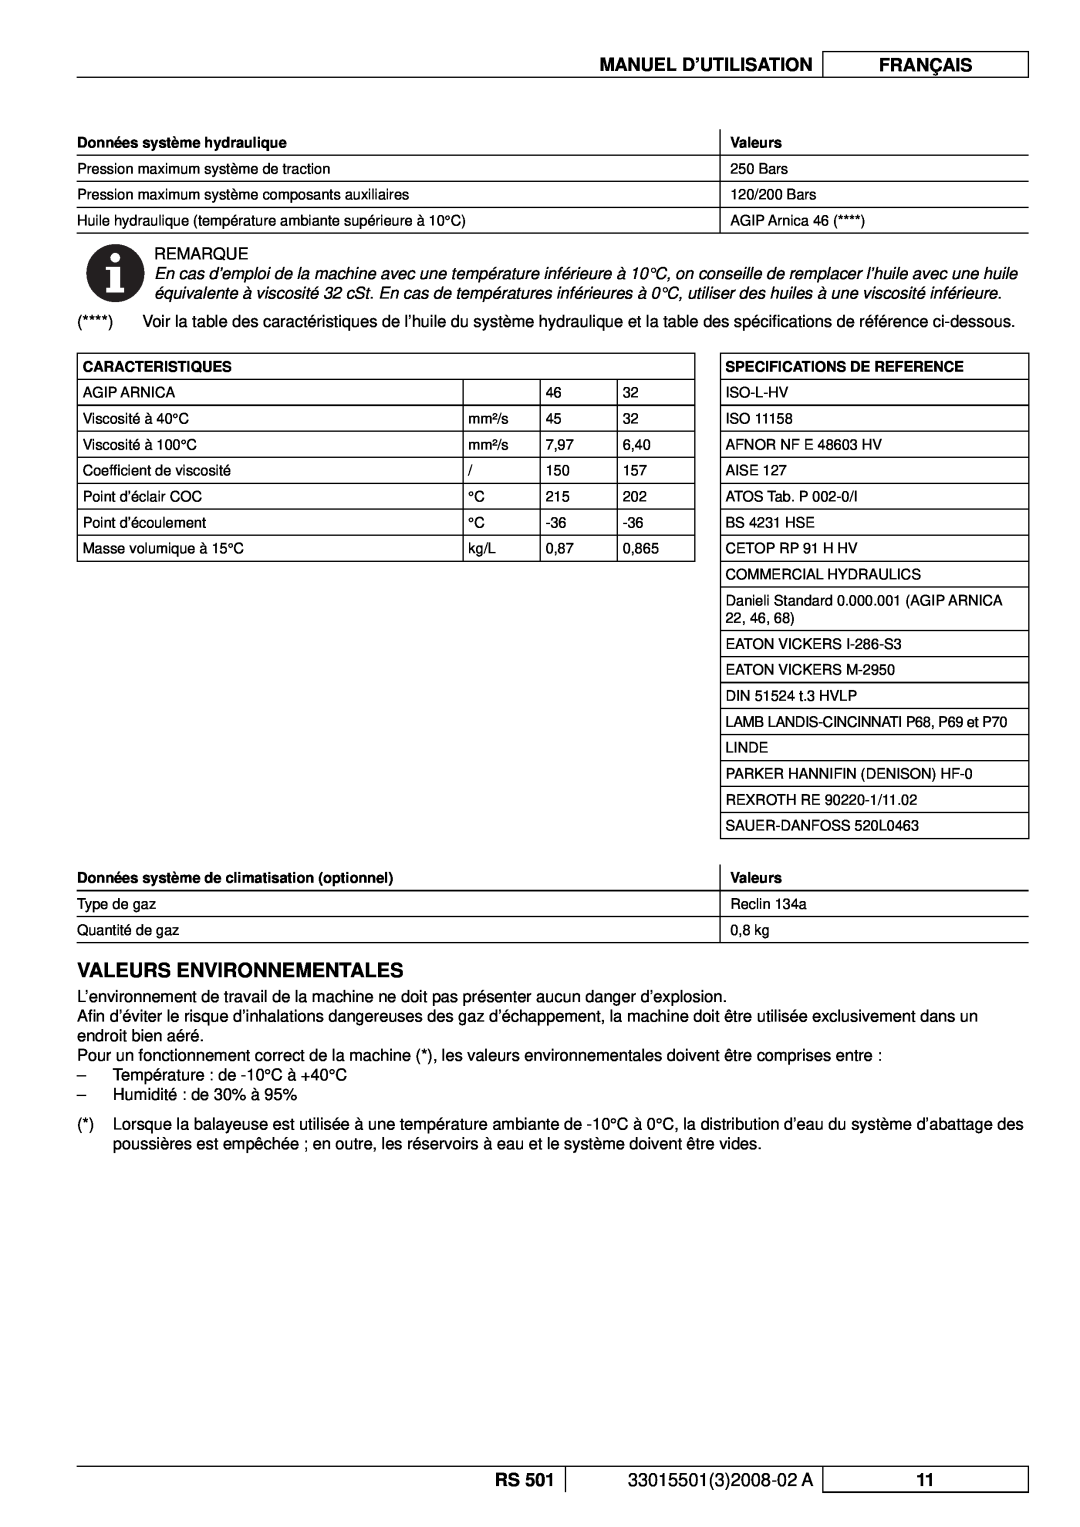 Nilfisk-ALTO RS 501 manuel dutilisation Valeurs Environnementales, Manuel D’Utilisation, Français, 3301550132008-02A 